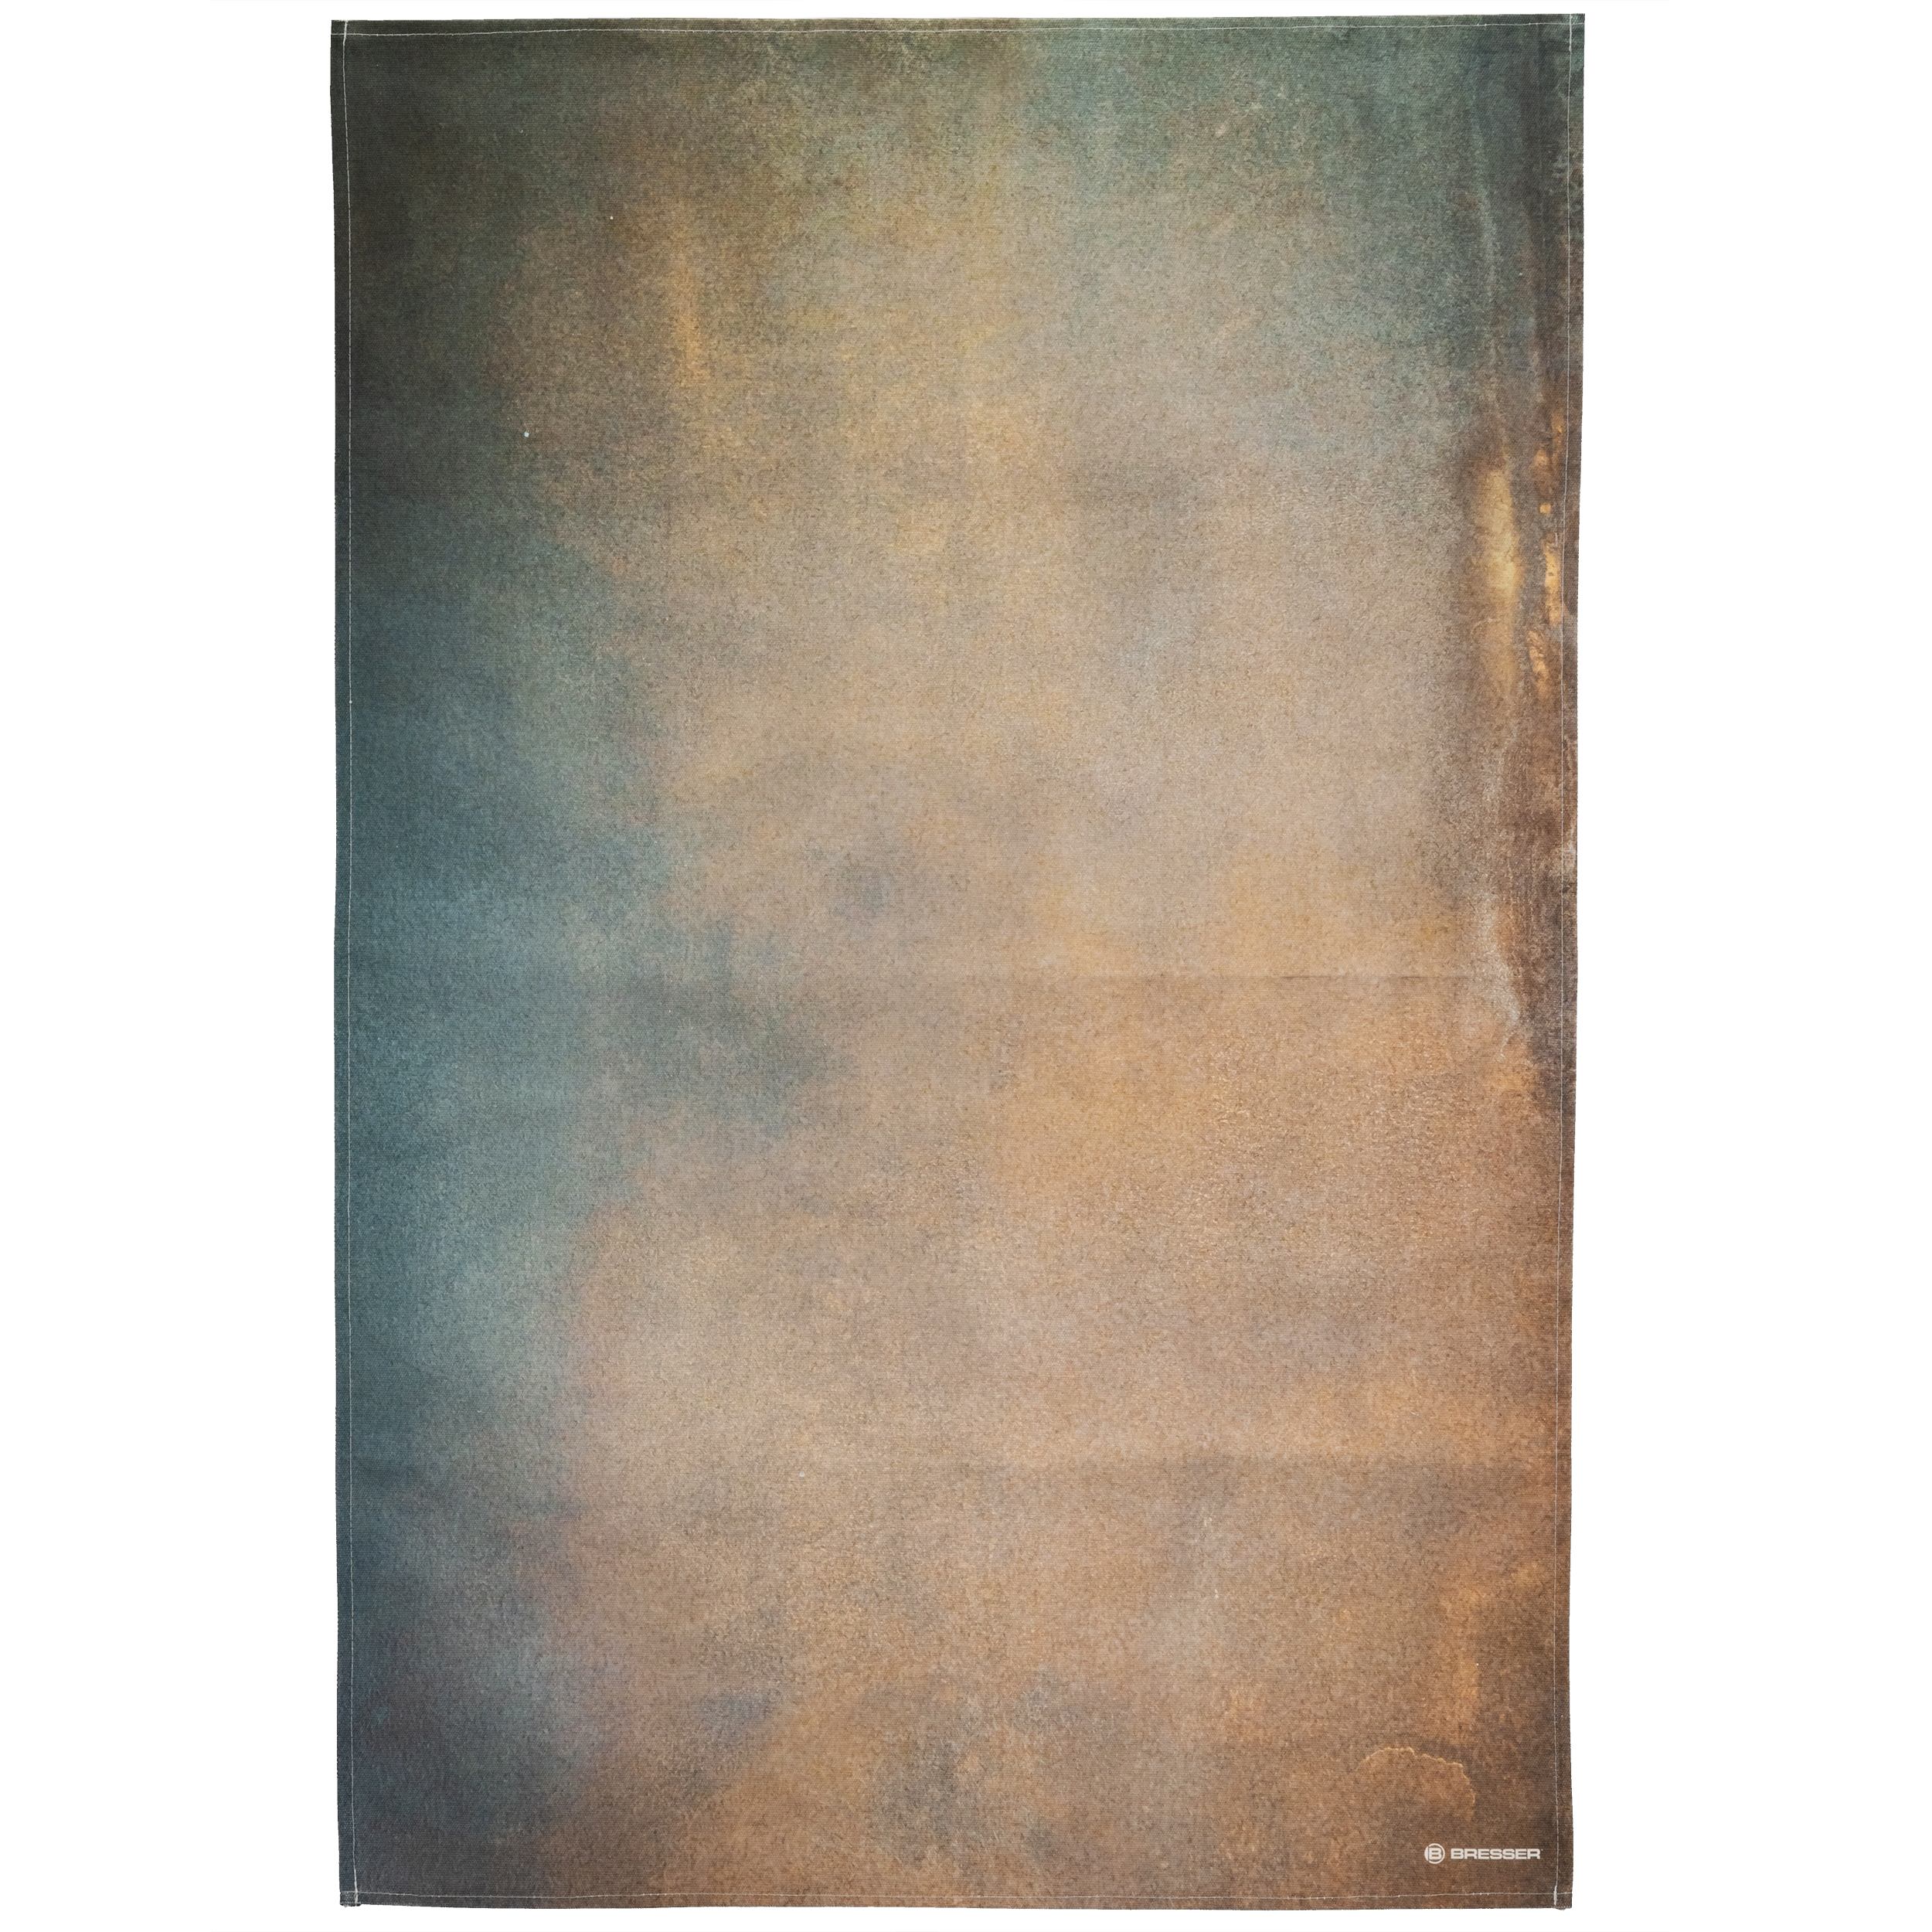 Fondo de Tela BRESSER con Estampado fotográfico 80 x 120 cm - Abstract Brown Blue